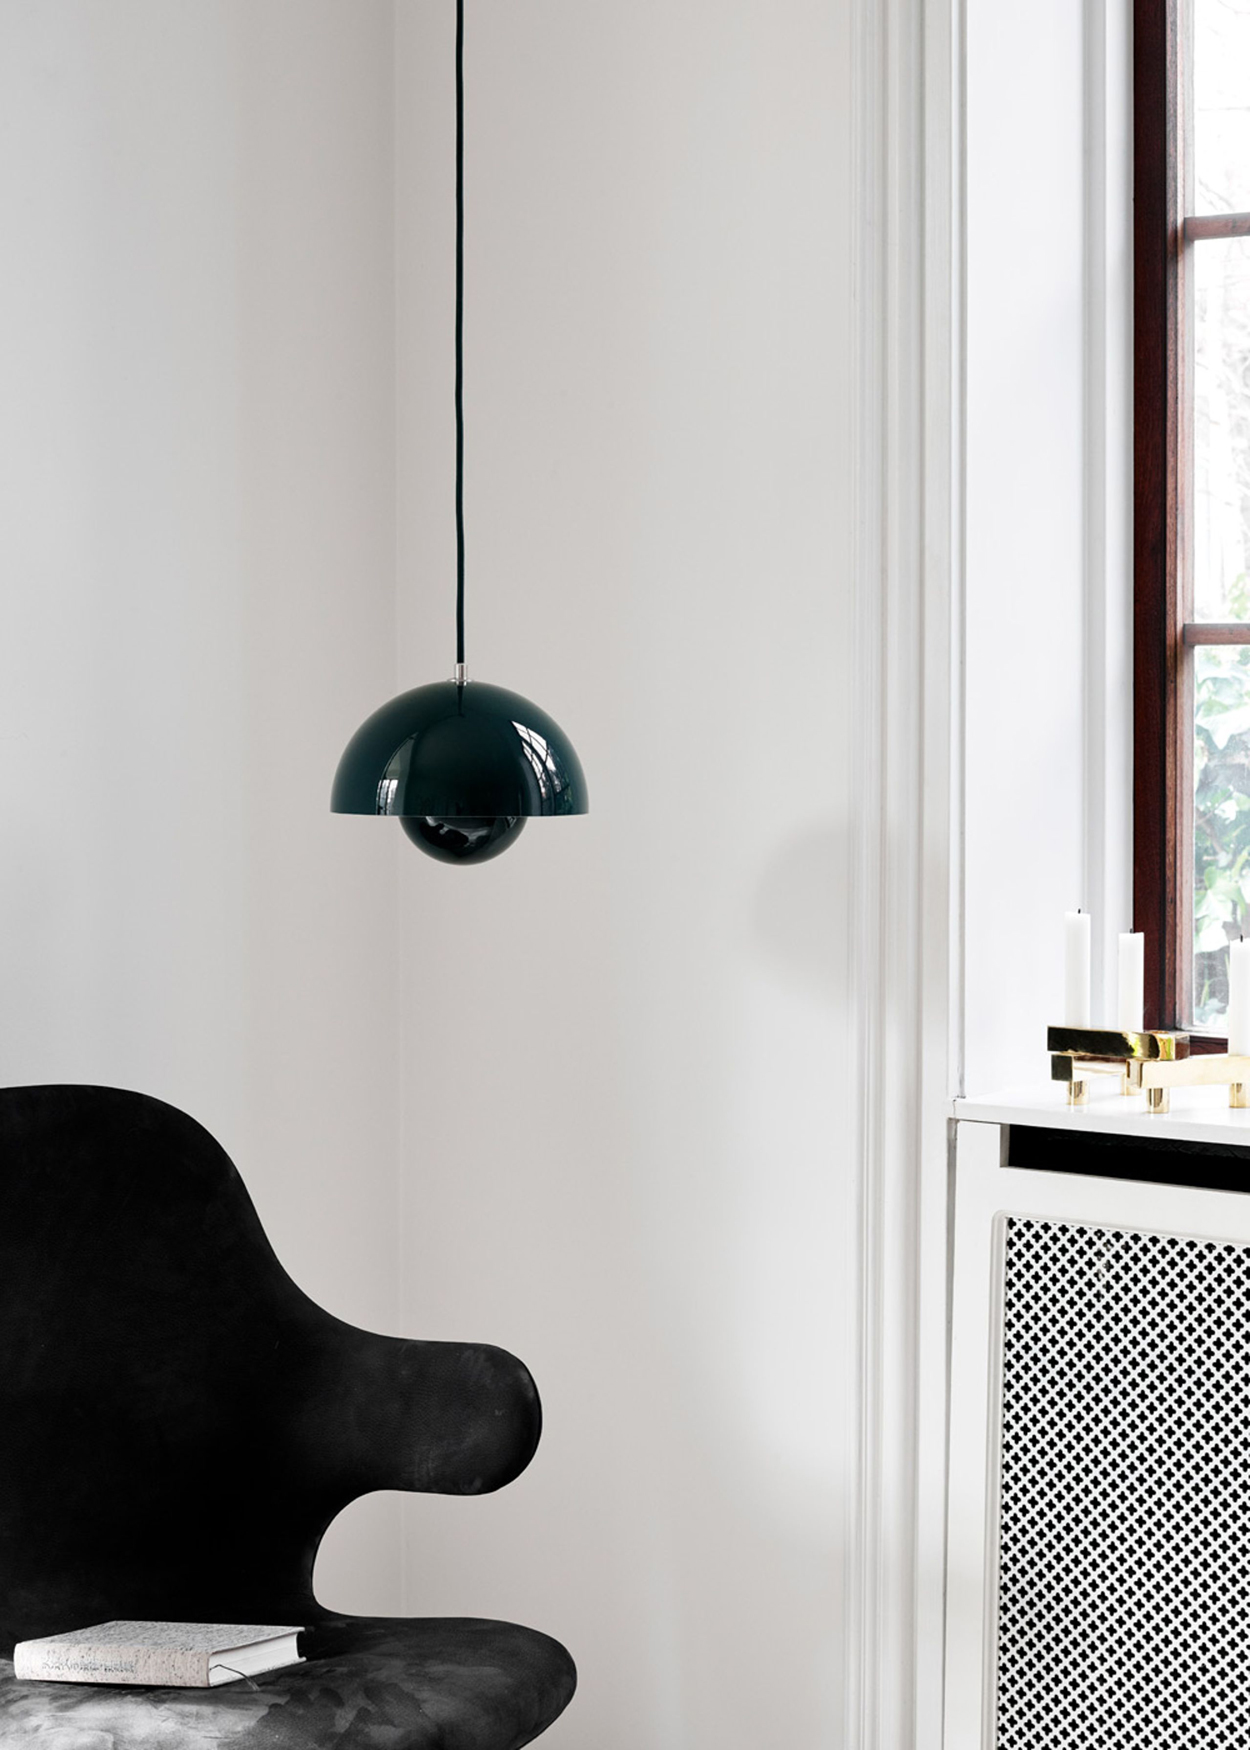 De Flowerpot VP1 is ontworpen door de Deense designer Verner Panton in 1968. De vriendelijke hanglamp heeft mooie, ronde vormen.